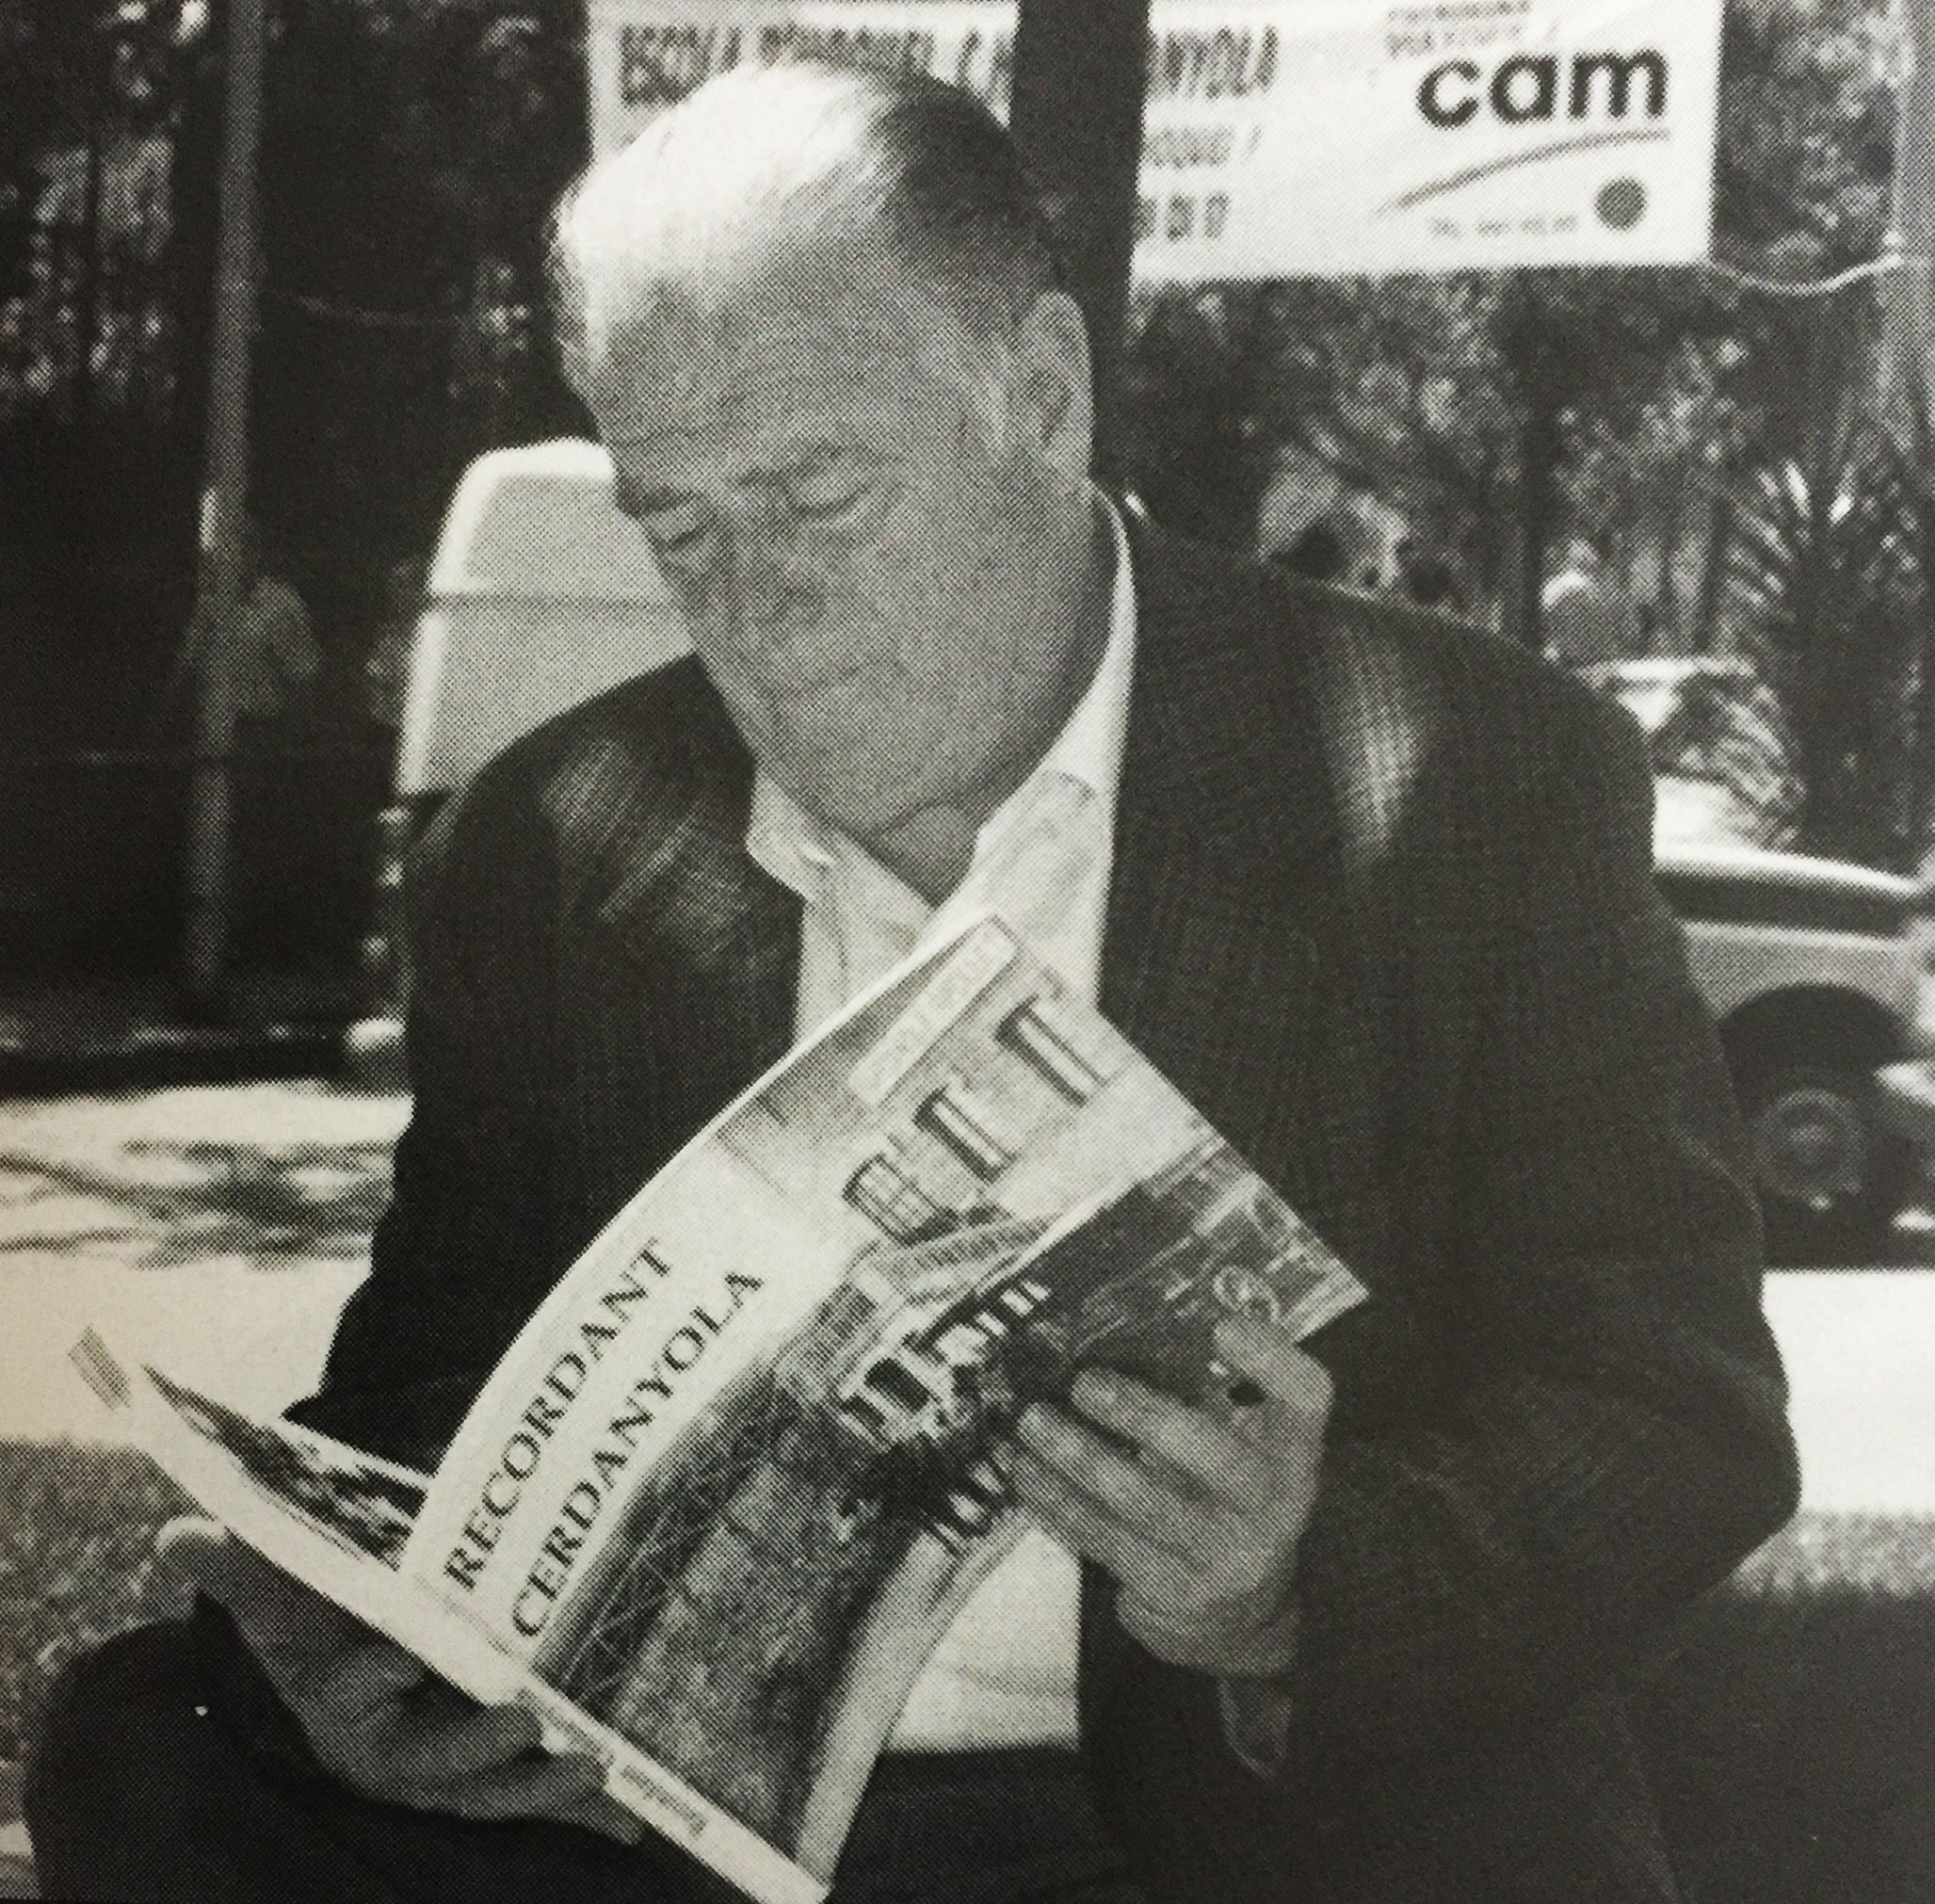 Gabriel Escursell amb el llibre "Recordant Cerdanyola", 1996. FOTO: Arxiu del TOT